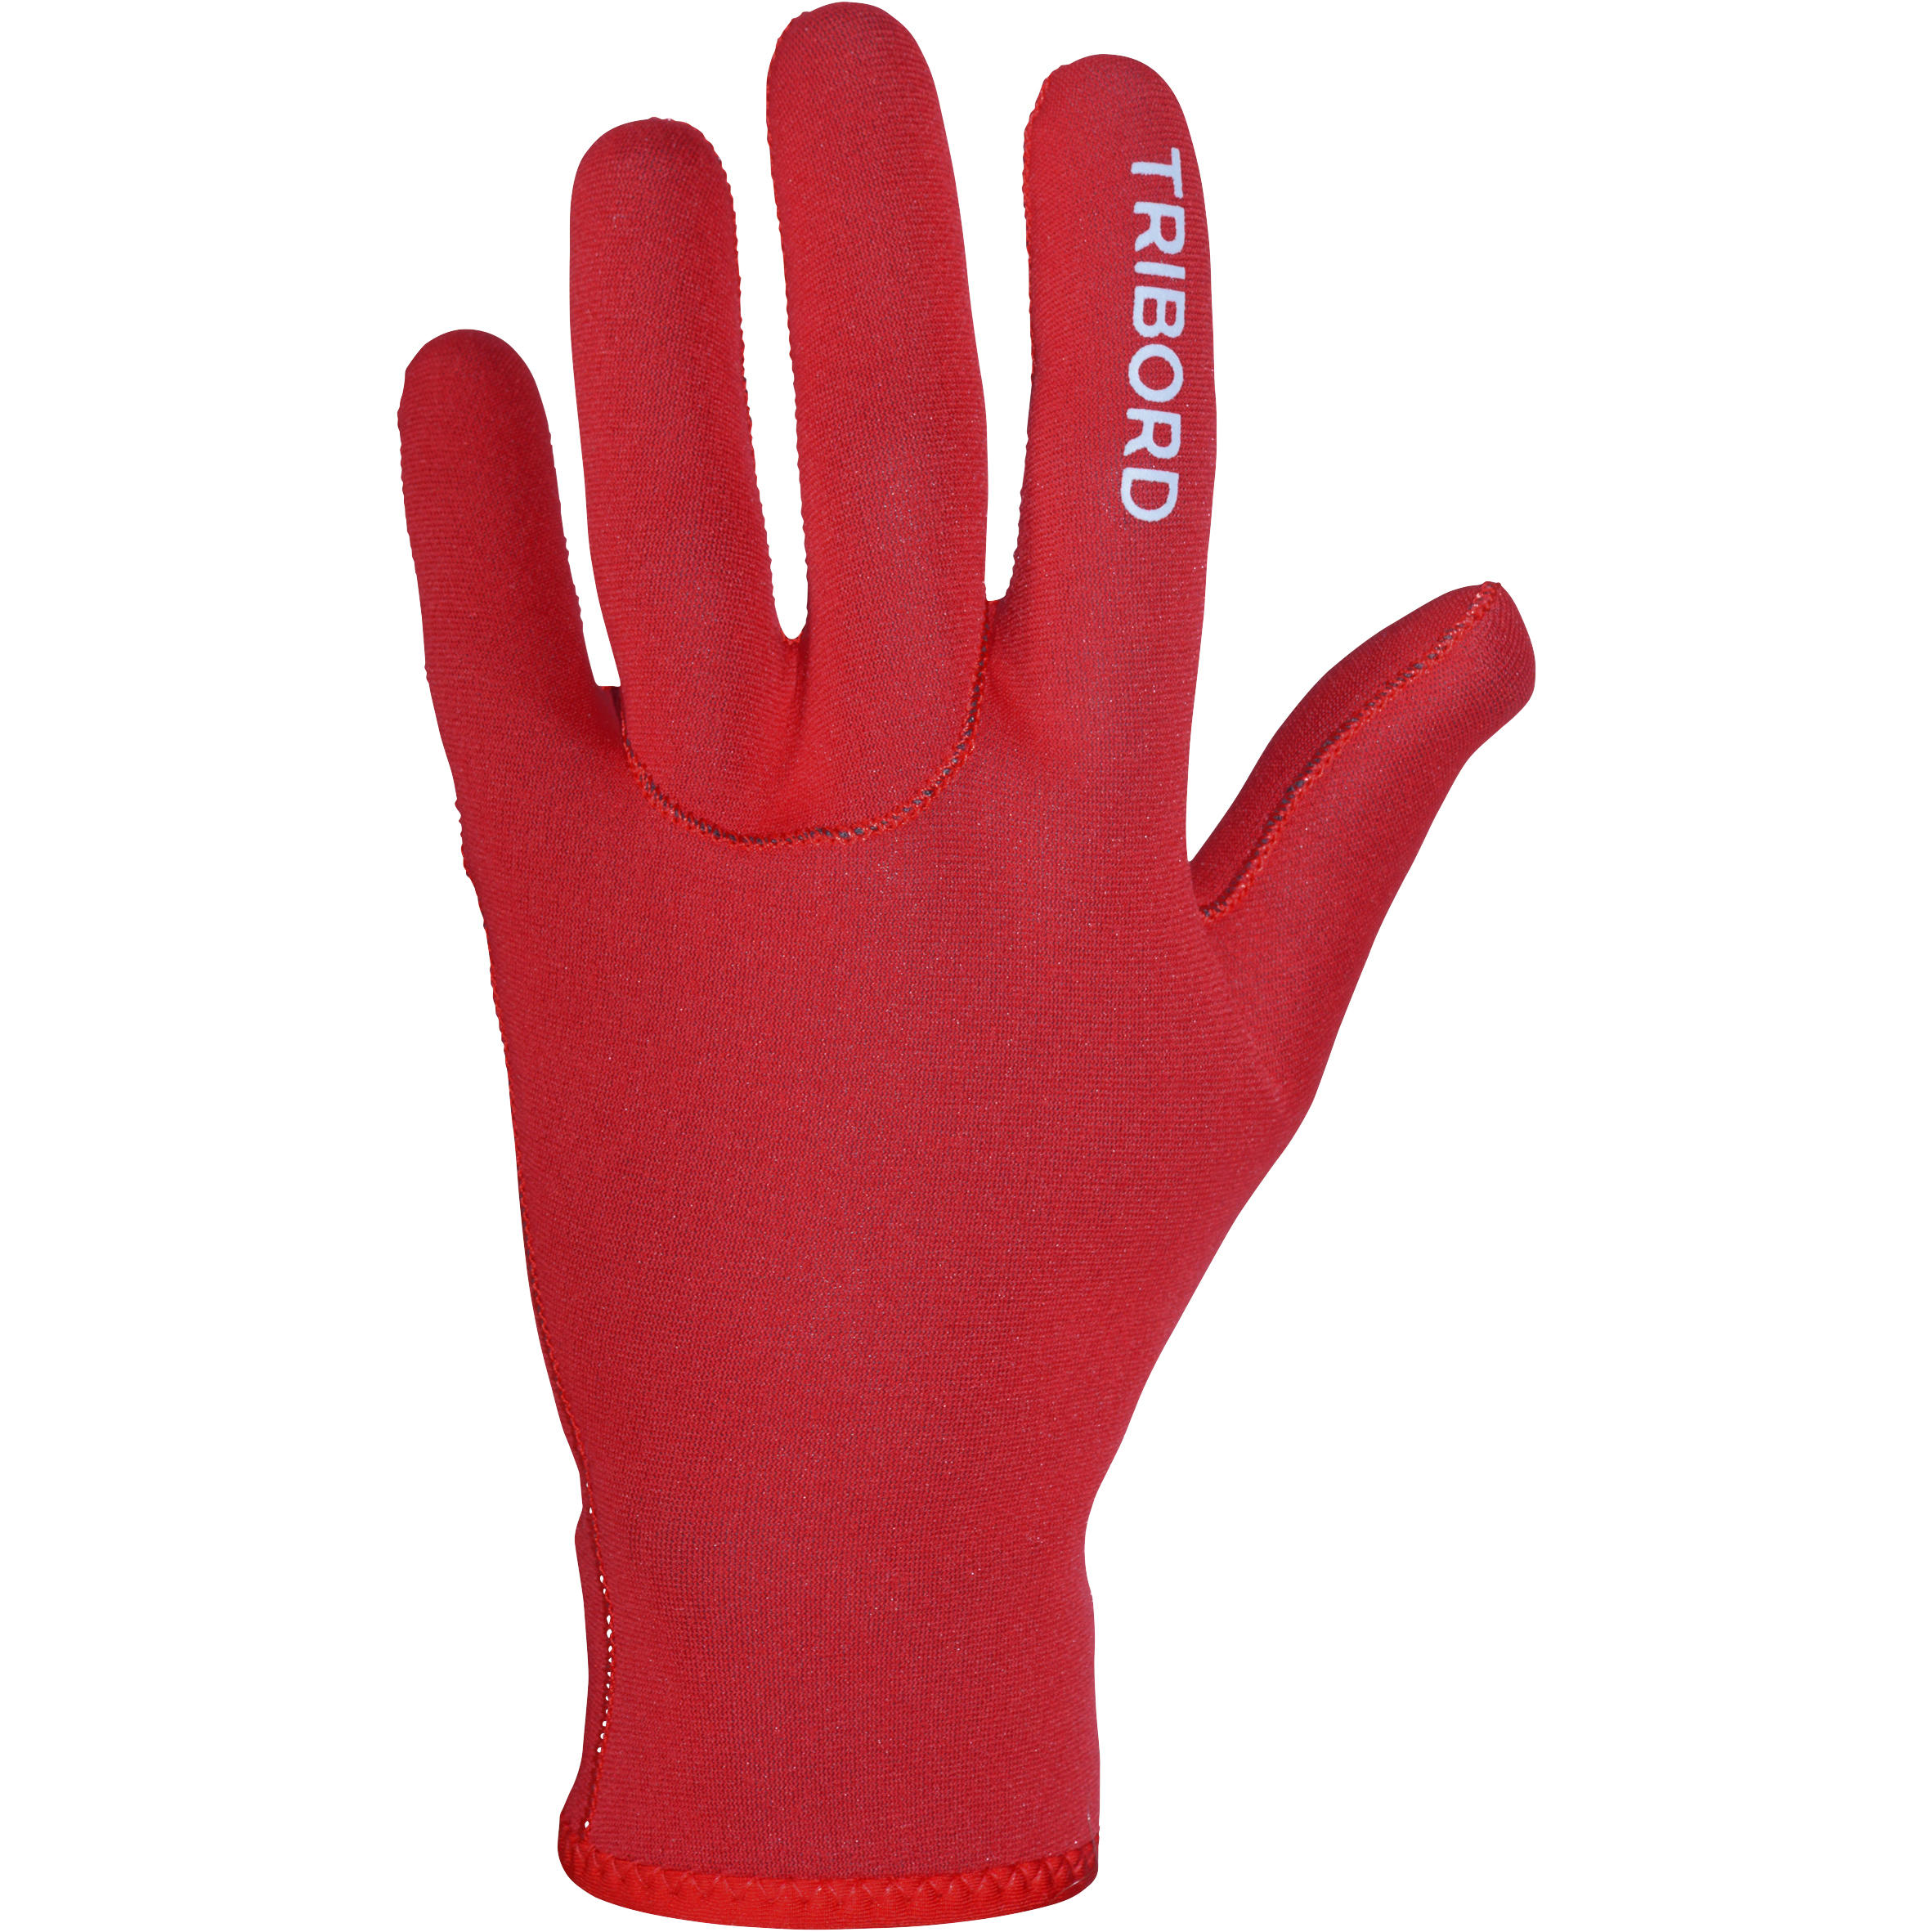 Neoprene Gloves for open Water Swimming